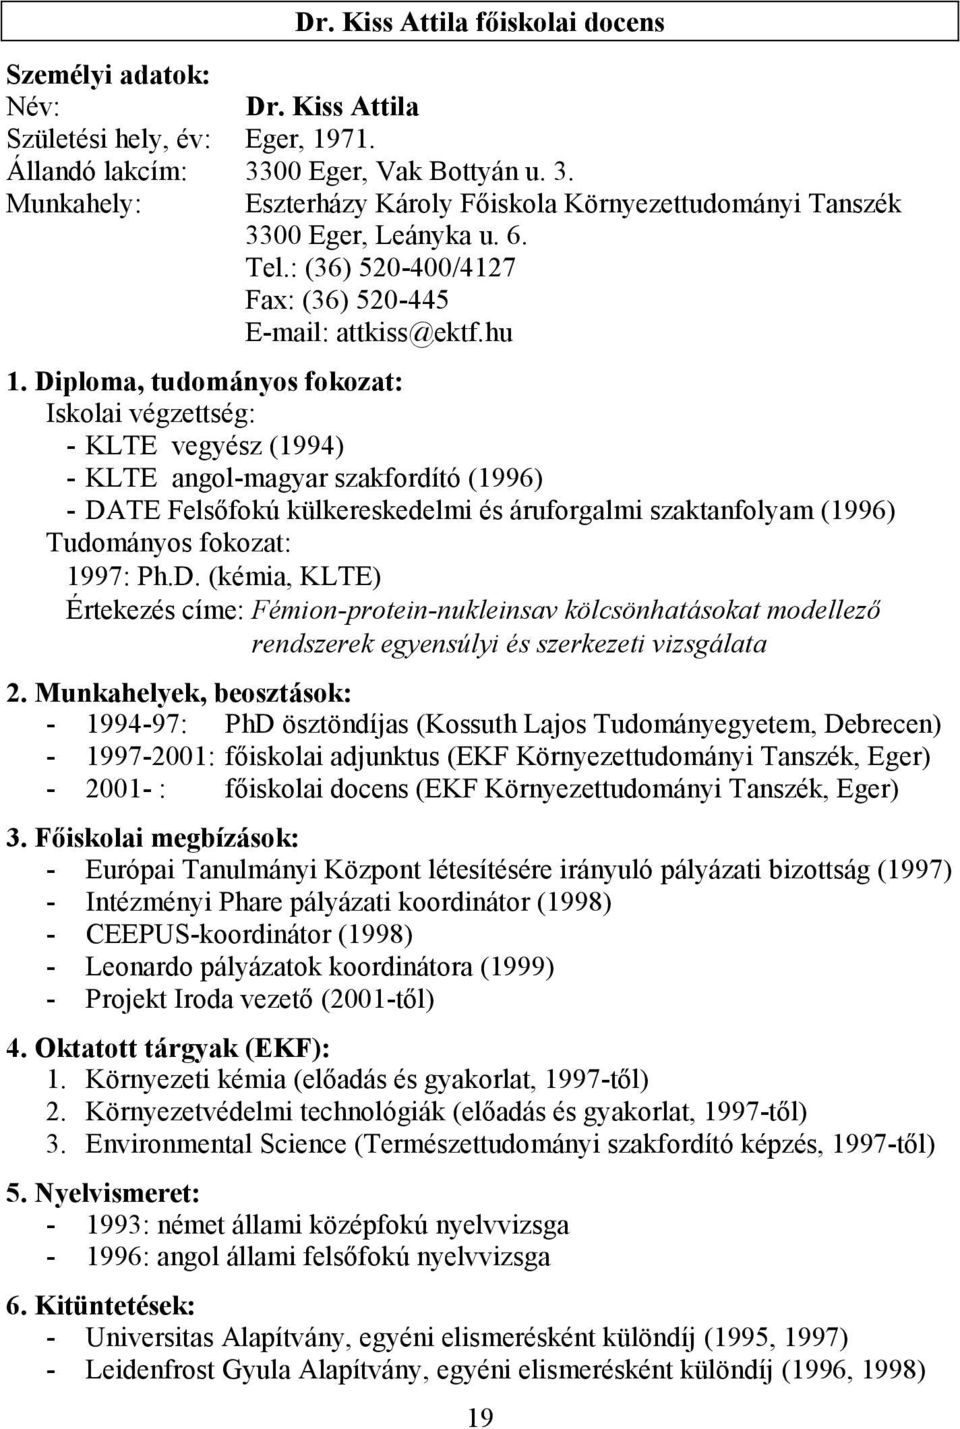 Diploma, tudományos fokozat: Iskolai végzettség: - KLTE vegyész (1994) - KLTE angol-magyar szakfordító (1996) - DATE Felsıfokú külkereskedelmi és áruforgalmi szaktanfolyam (1996) Tudományos fokozat: